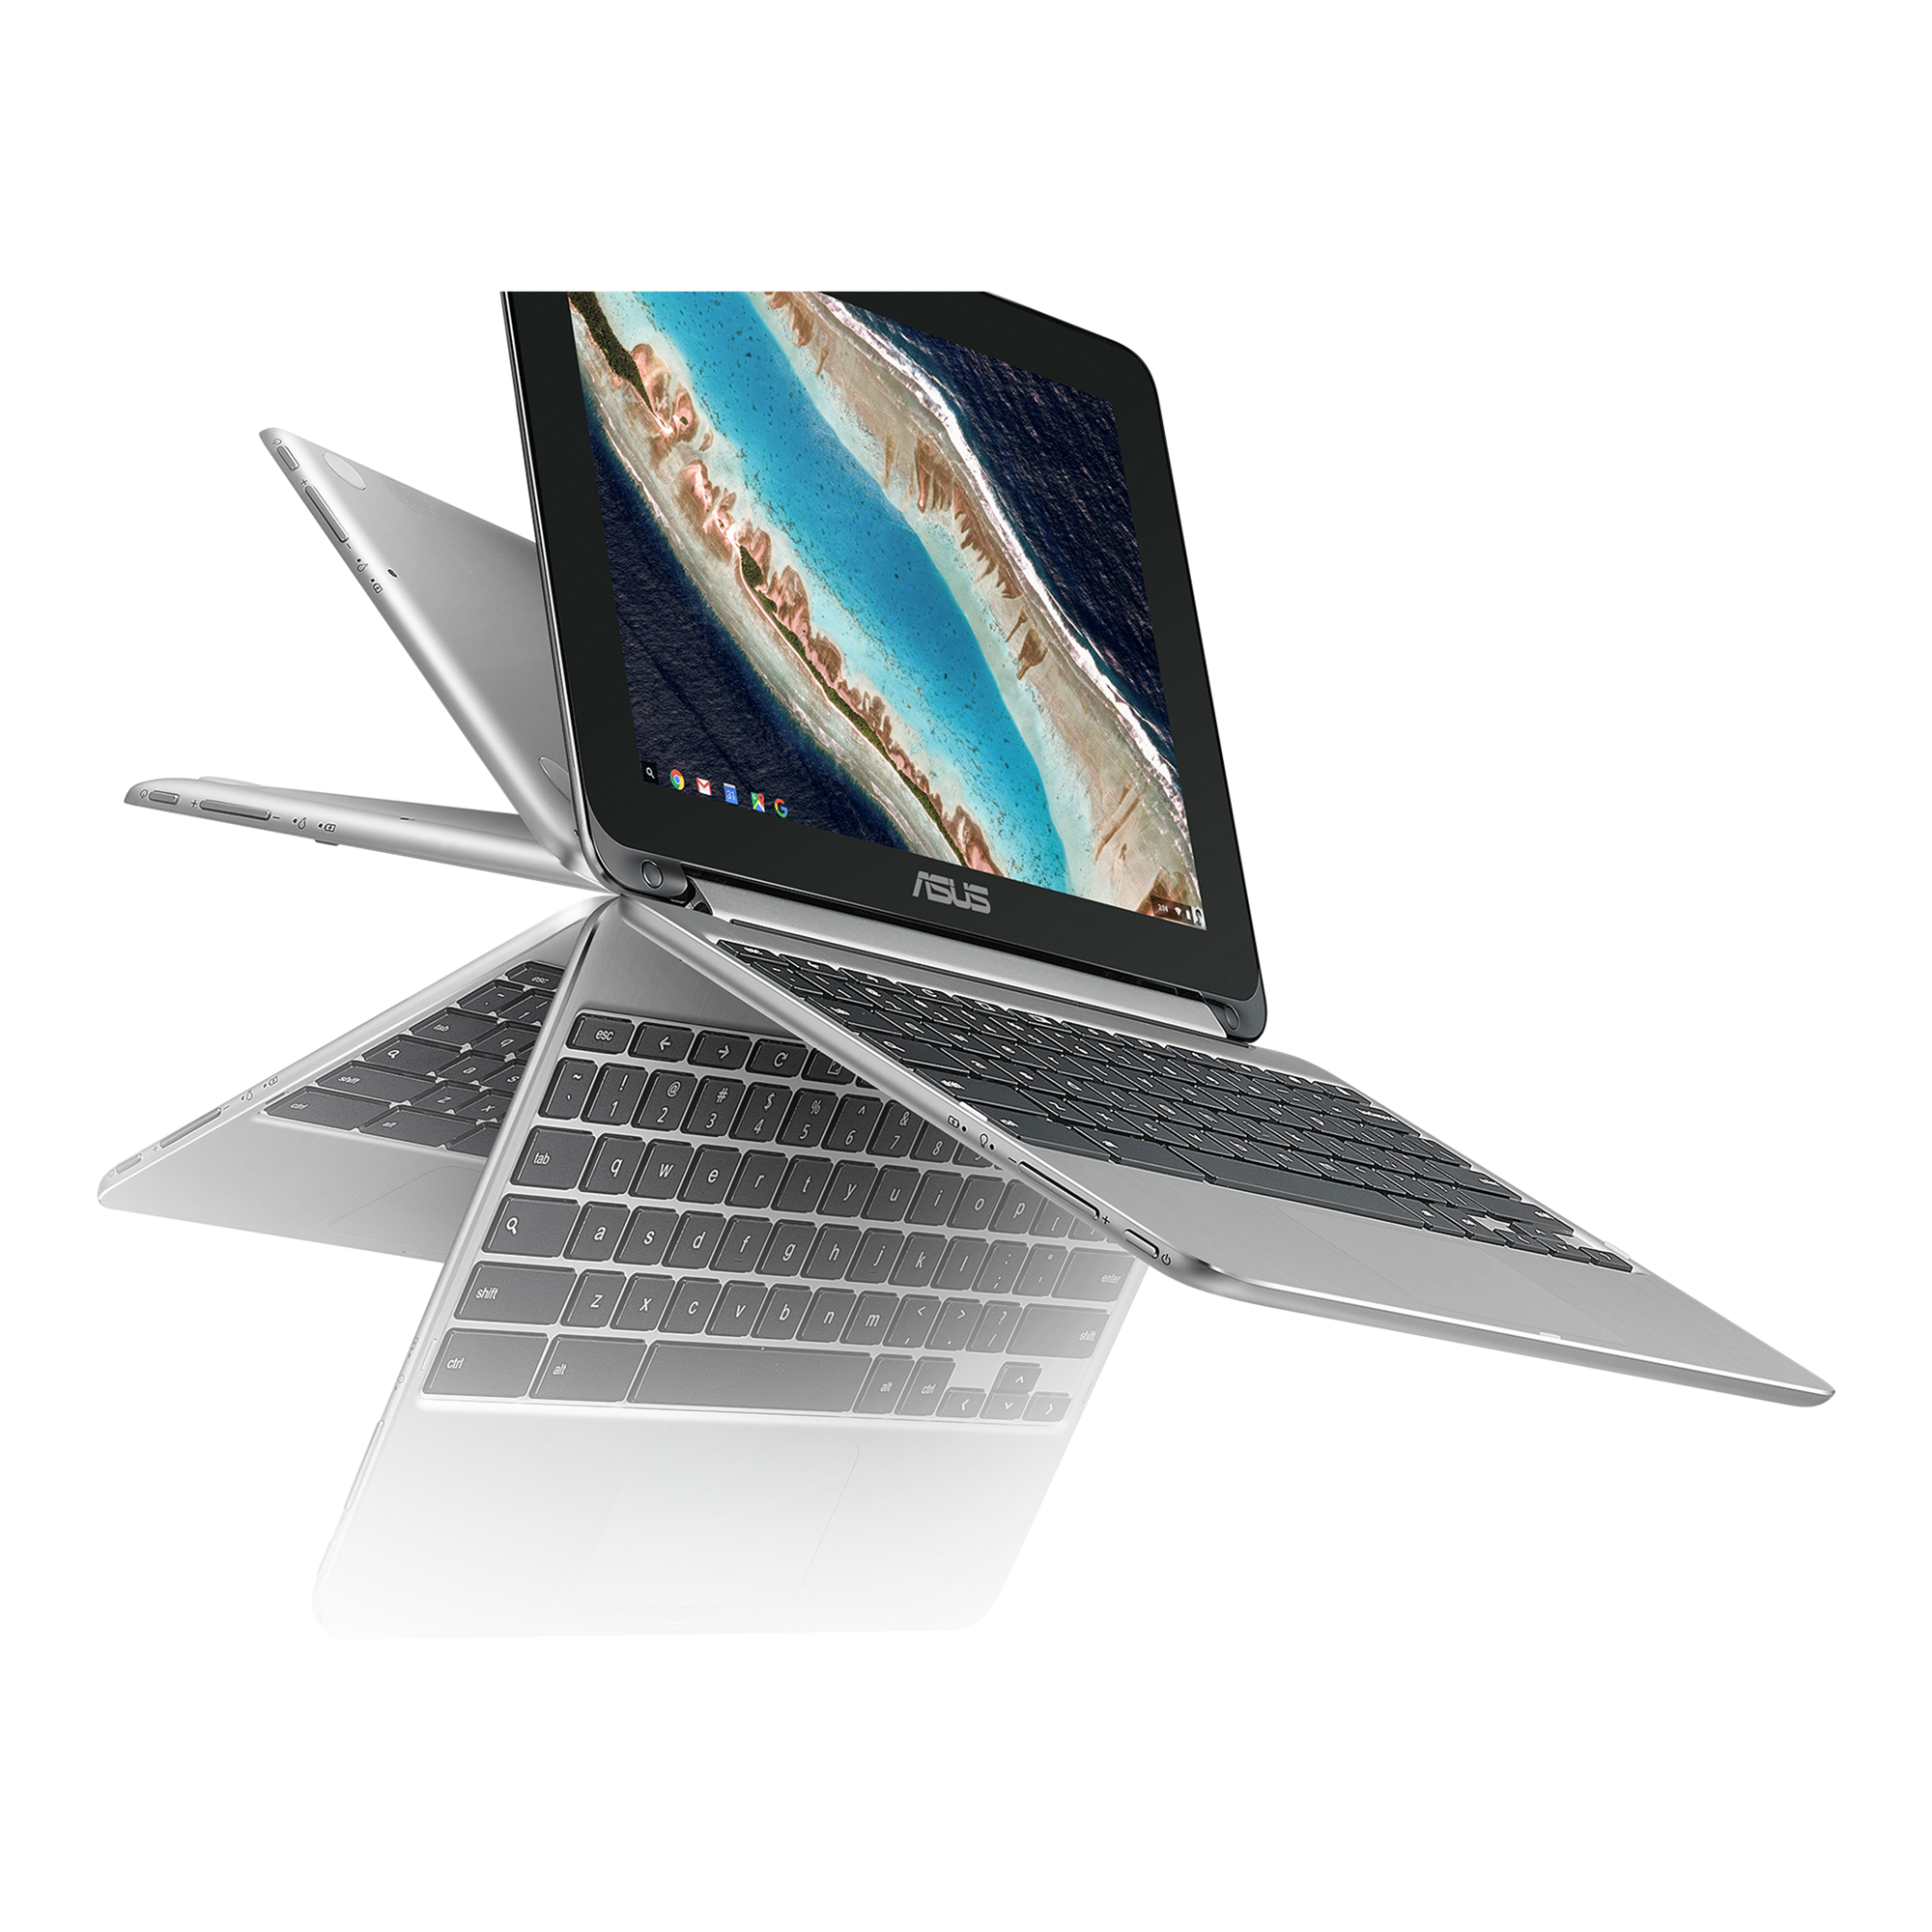 美品】小型軽量で持ち運び楽な ASUS Chromebook C101PA